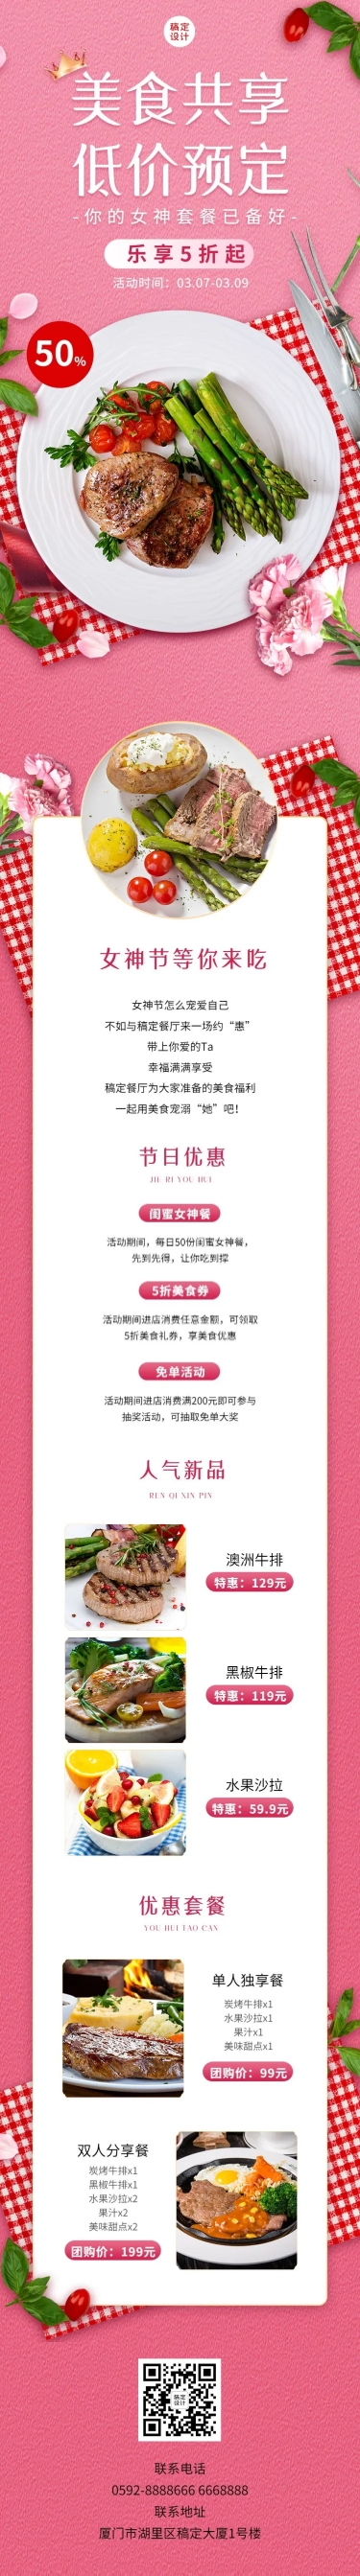 妇女节女神节节日营销促销餐饮文章长图